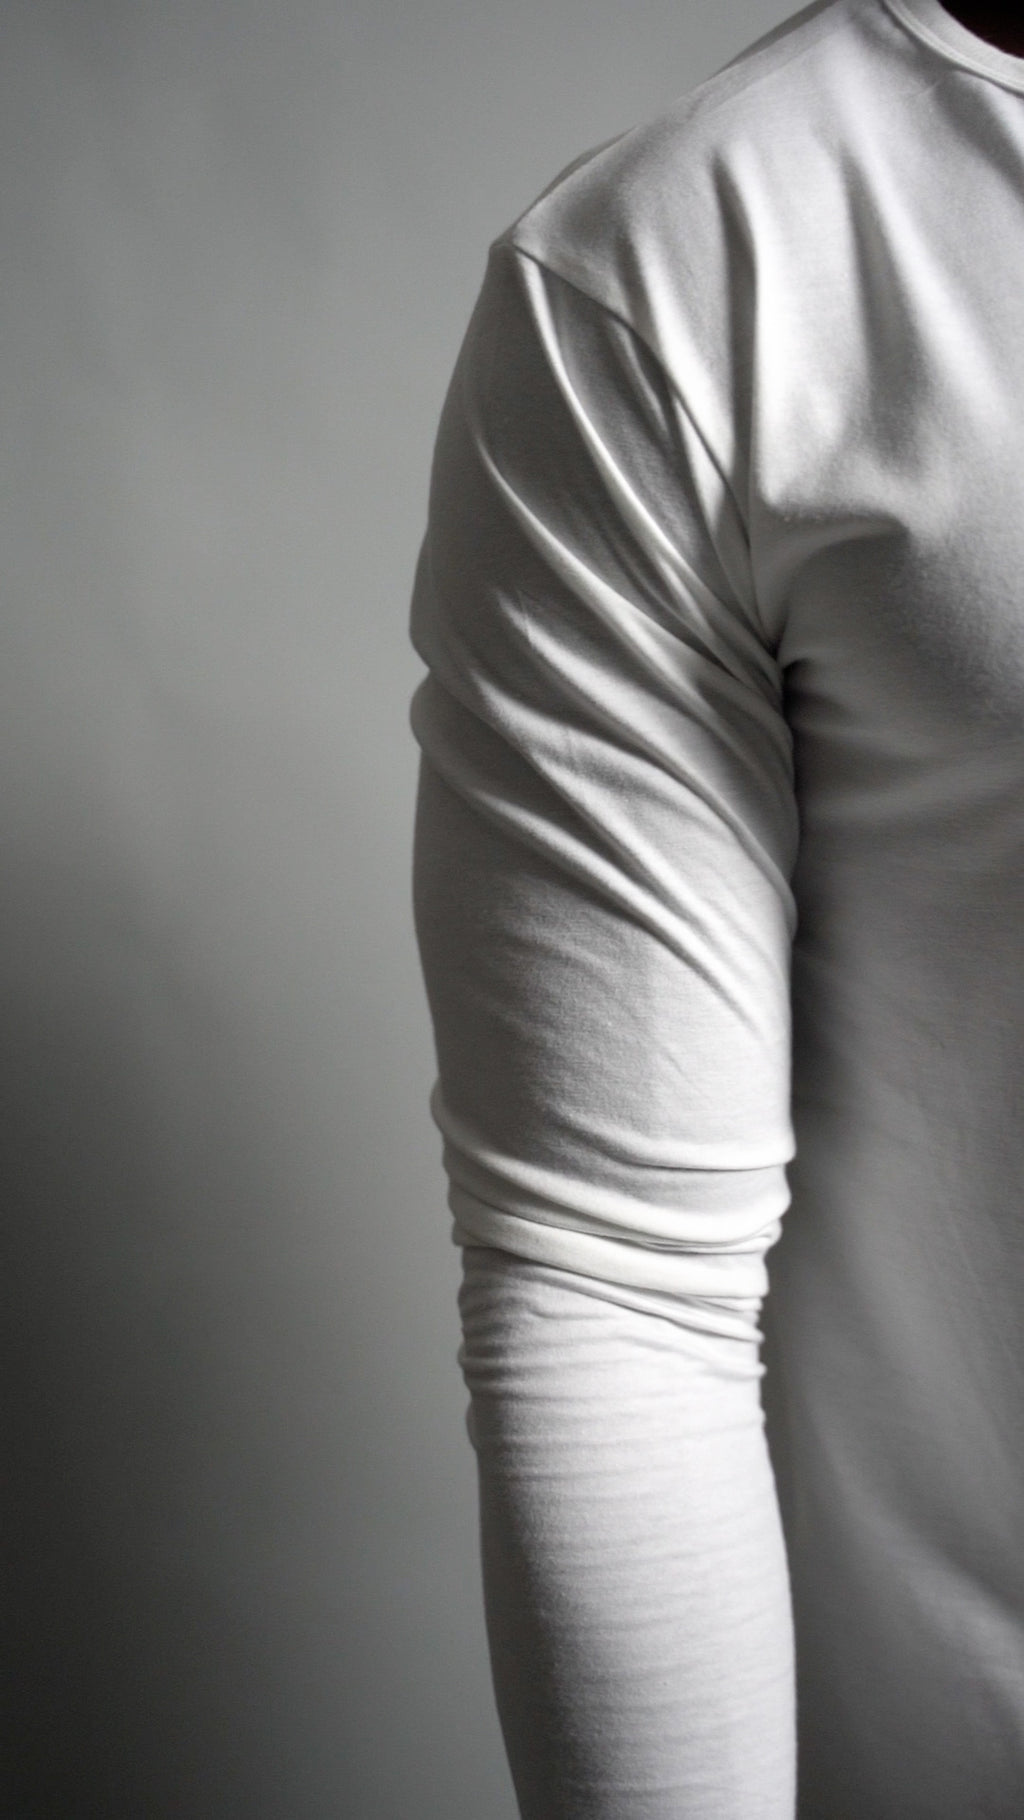 Video of long sleeve white split hem from Ten/10 apparel